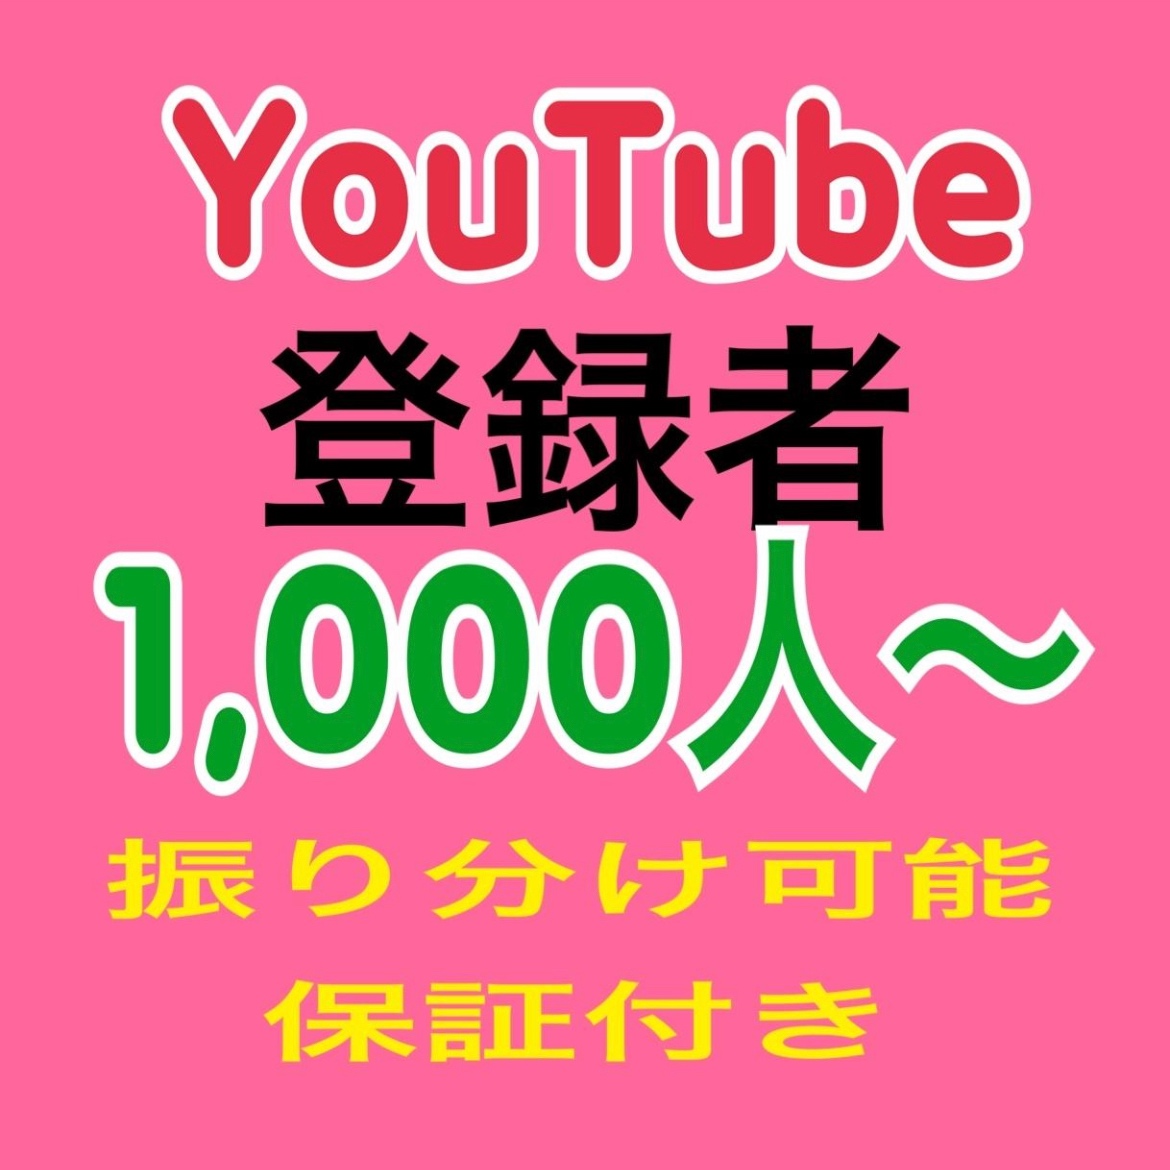 Tăng số người đăng ký kênh YouTube lên 1000